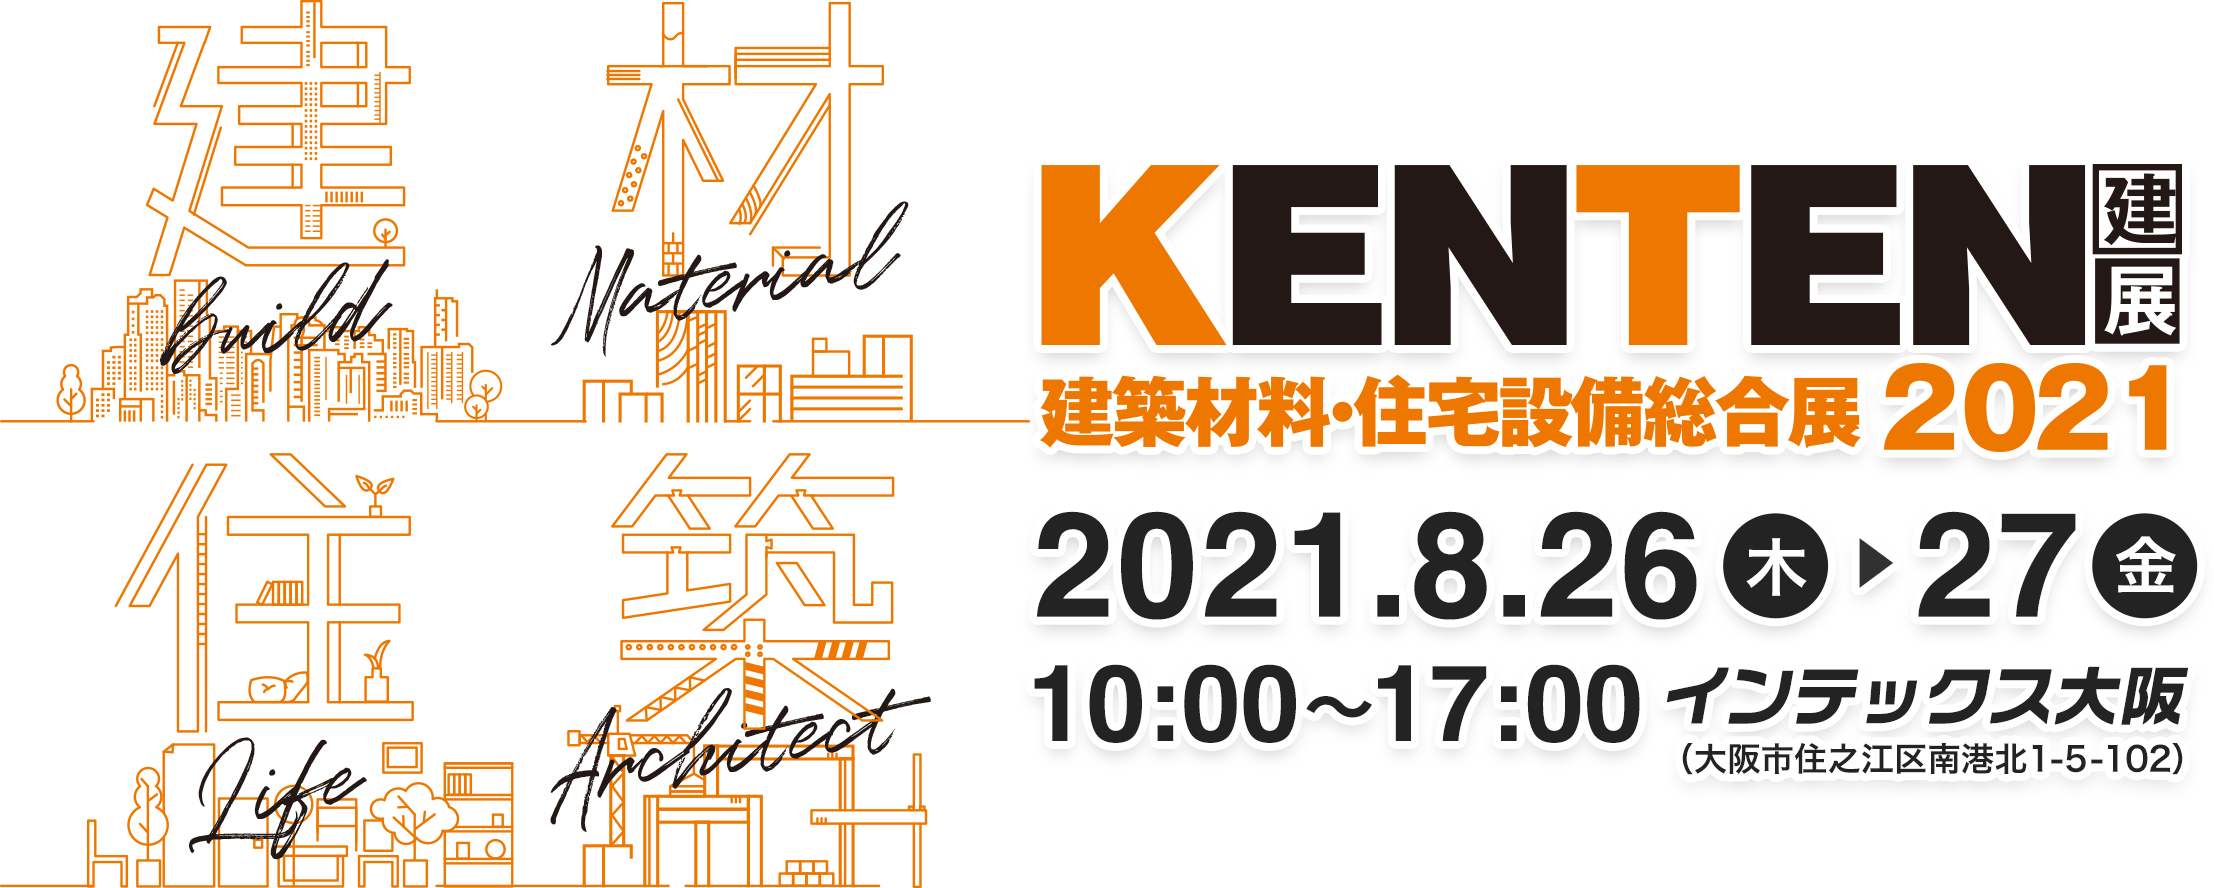 「建築材料・住宅設備総合展 KENTEN 2021」に出展いたします。